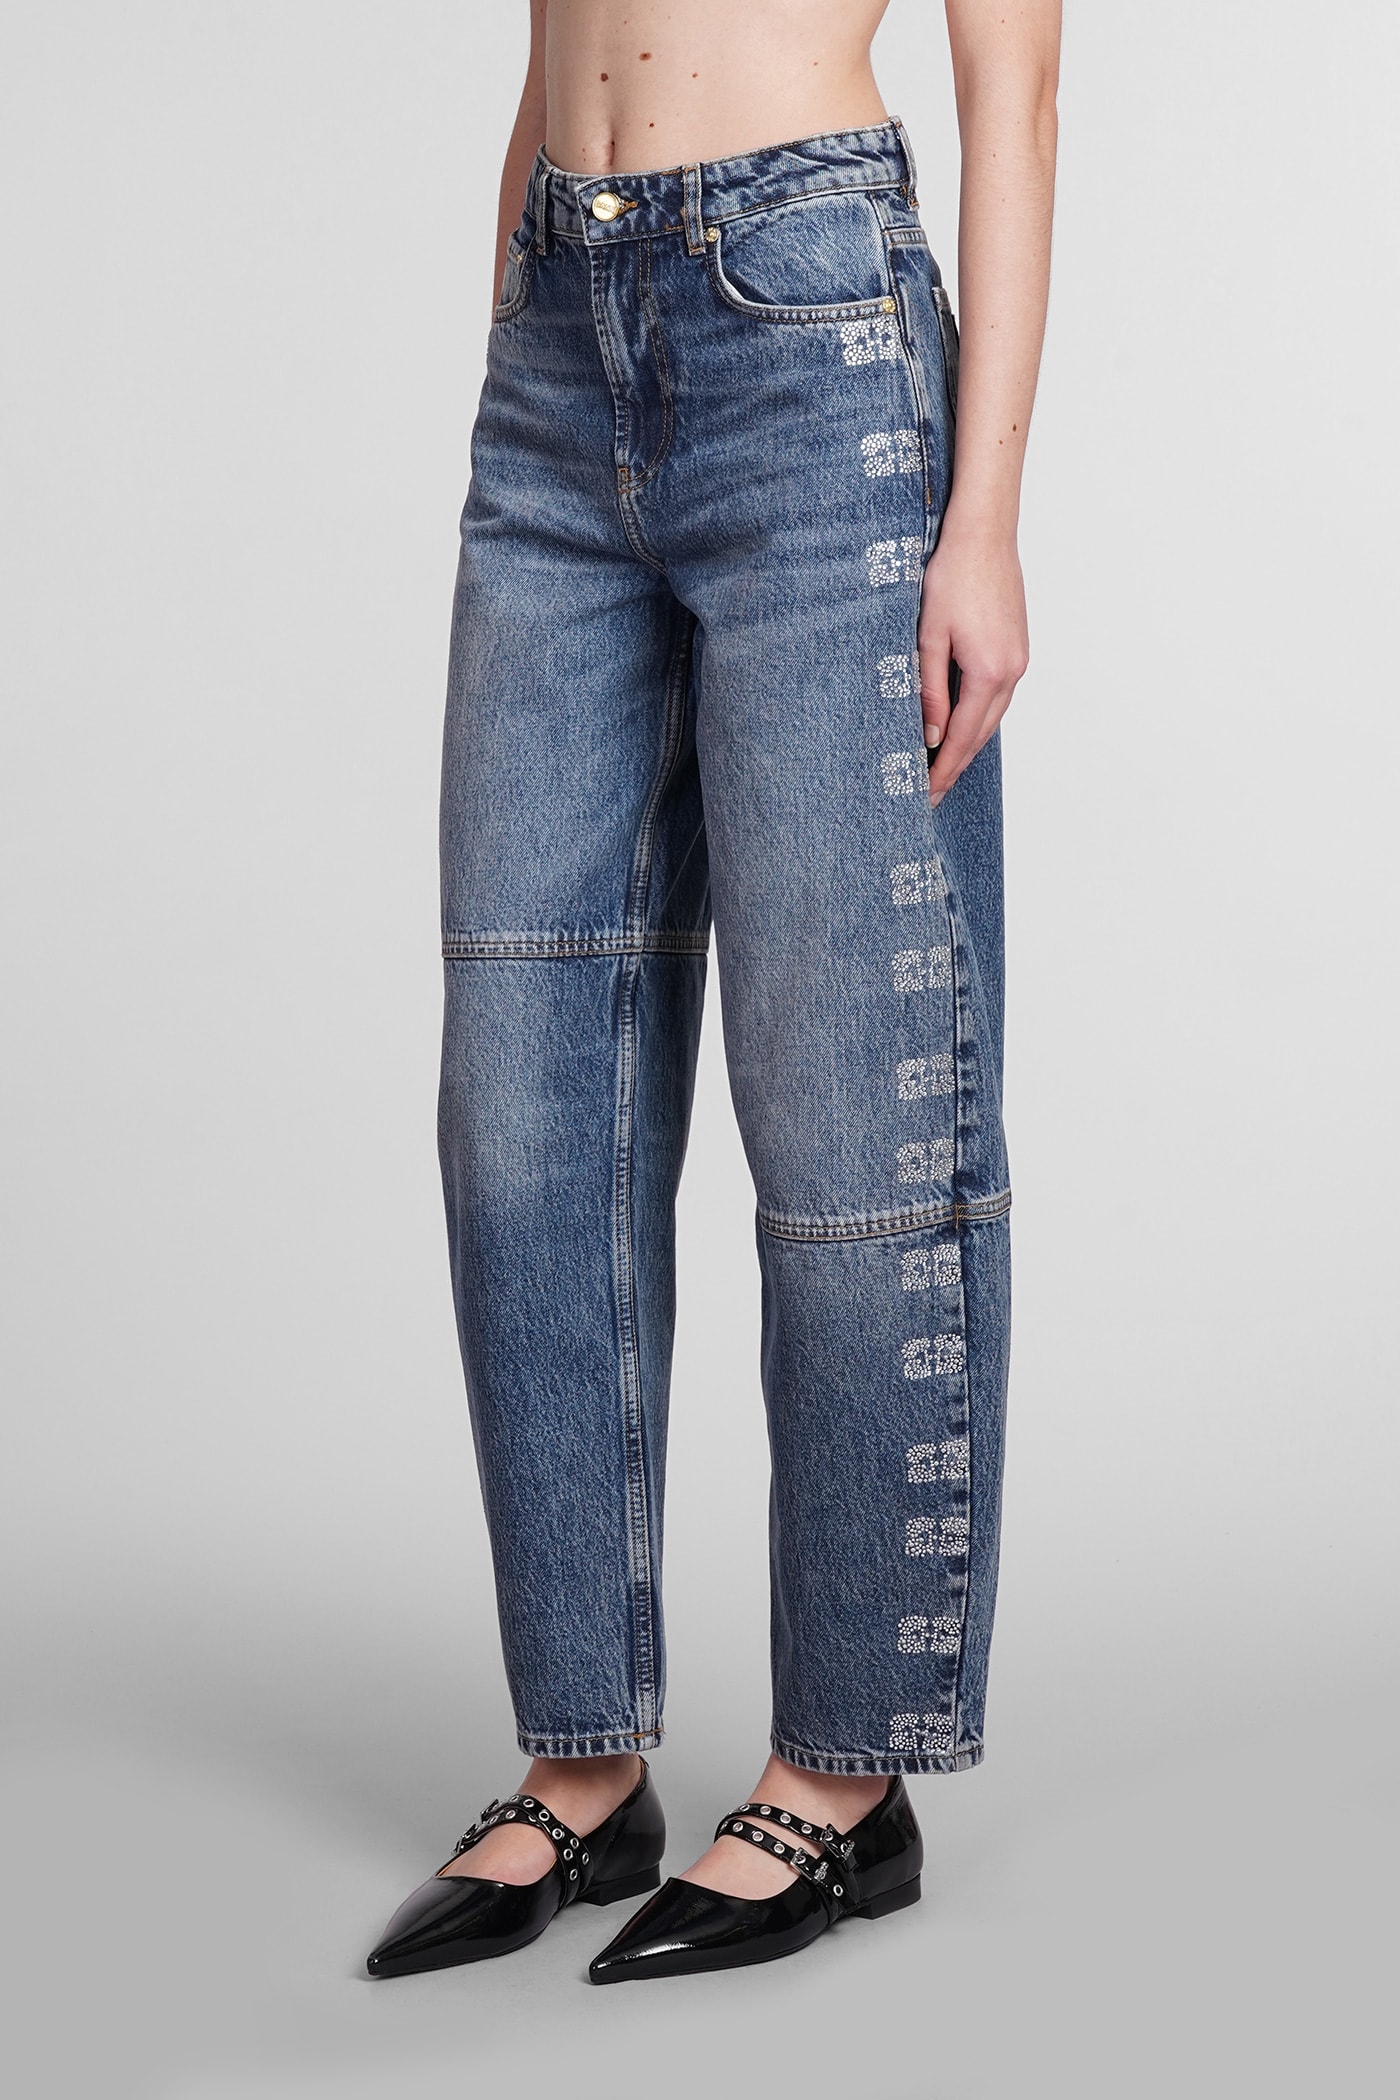 Shop Ganni Jeans In Blue Cotton